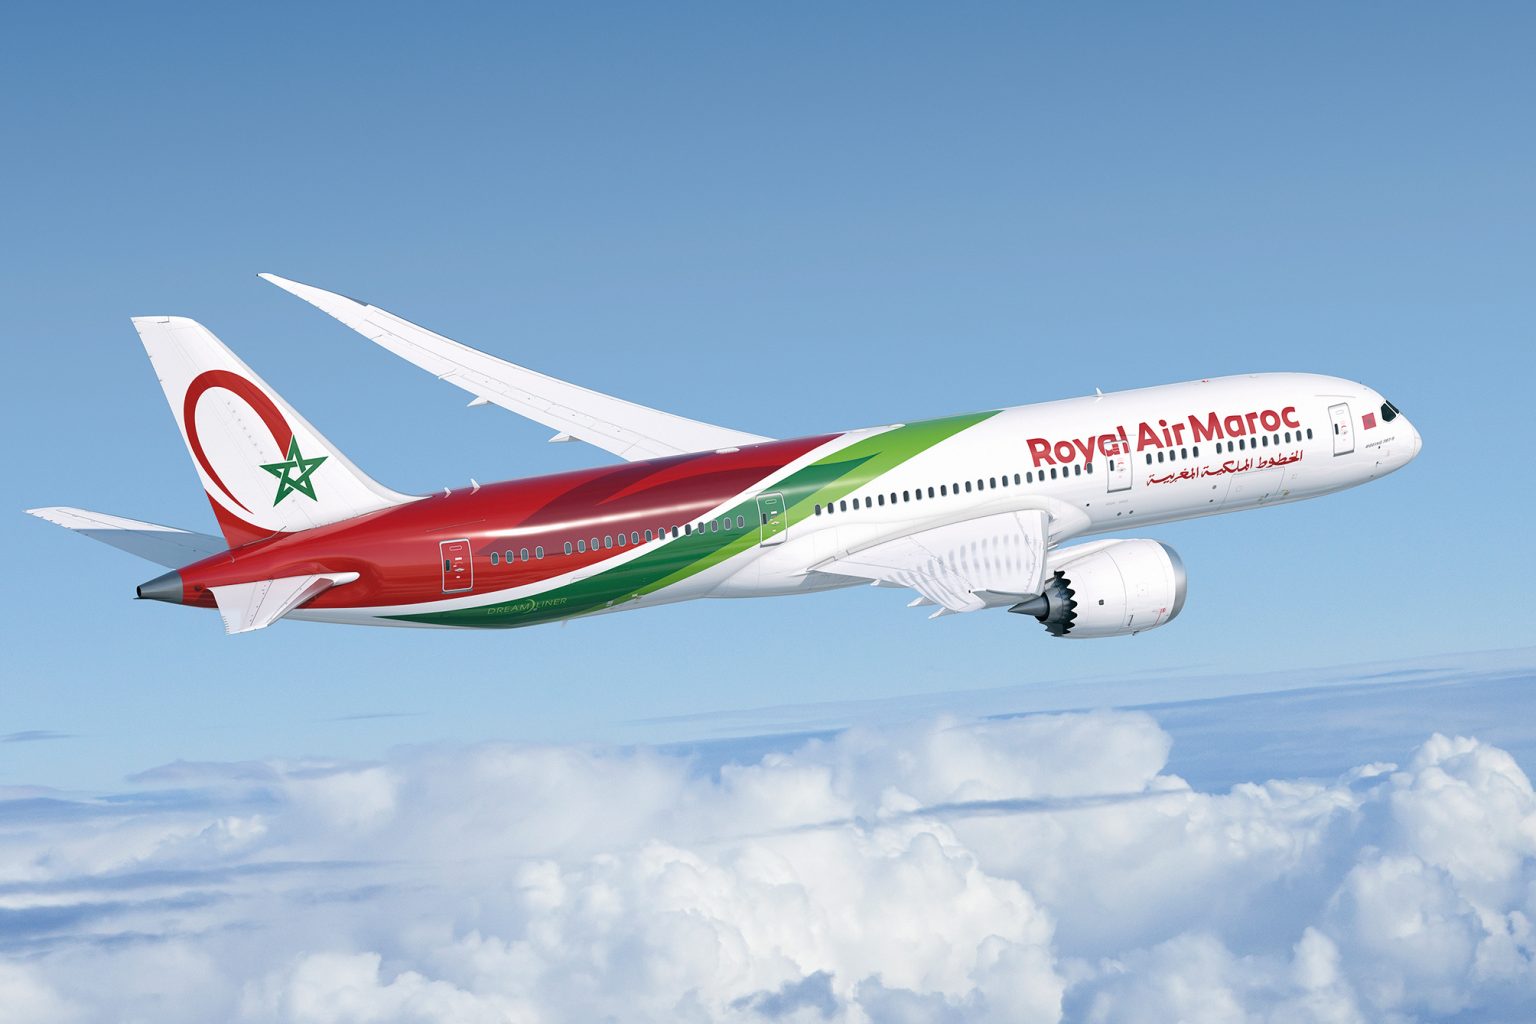 Royal Air Maroc propose des tarifs réduits pour cet été